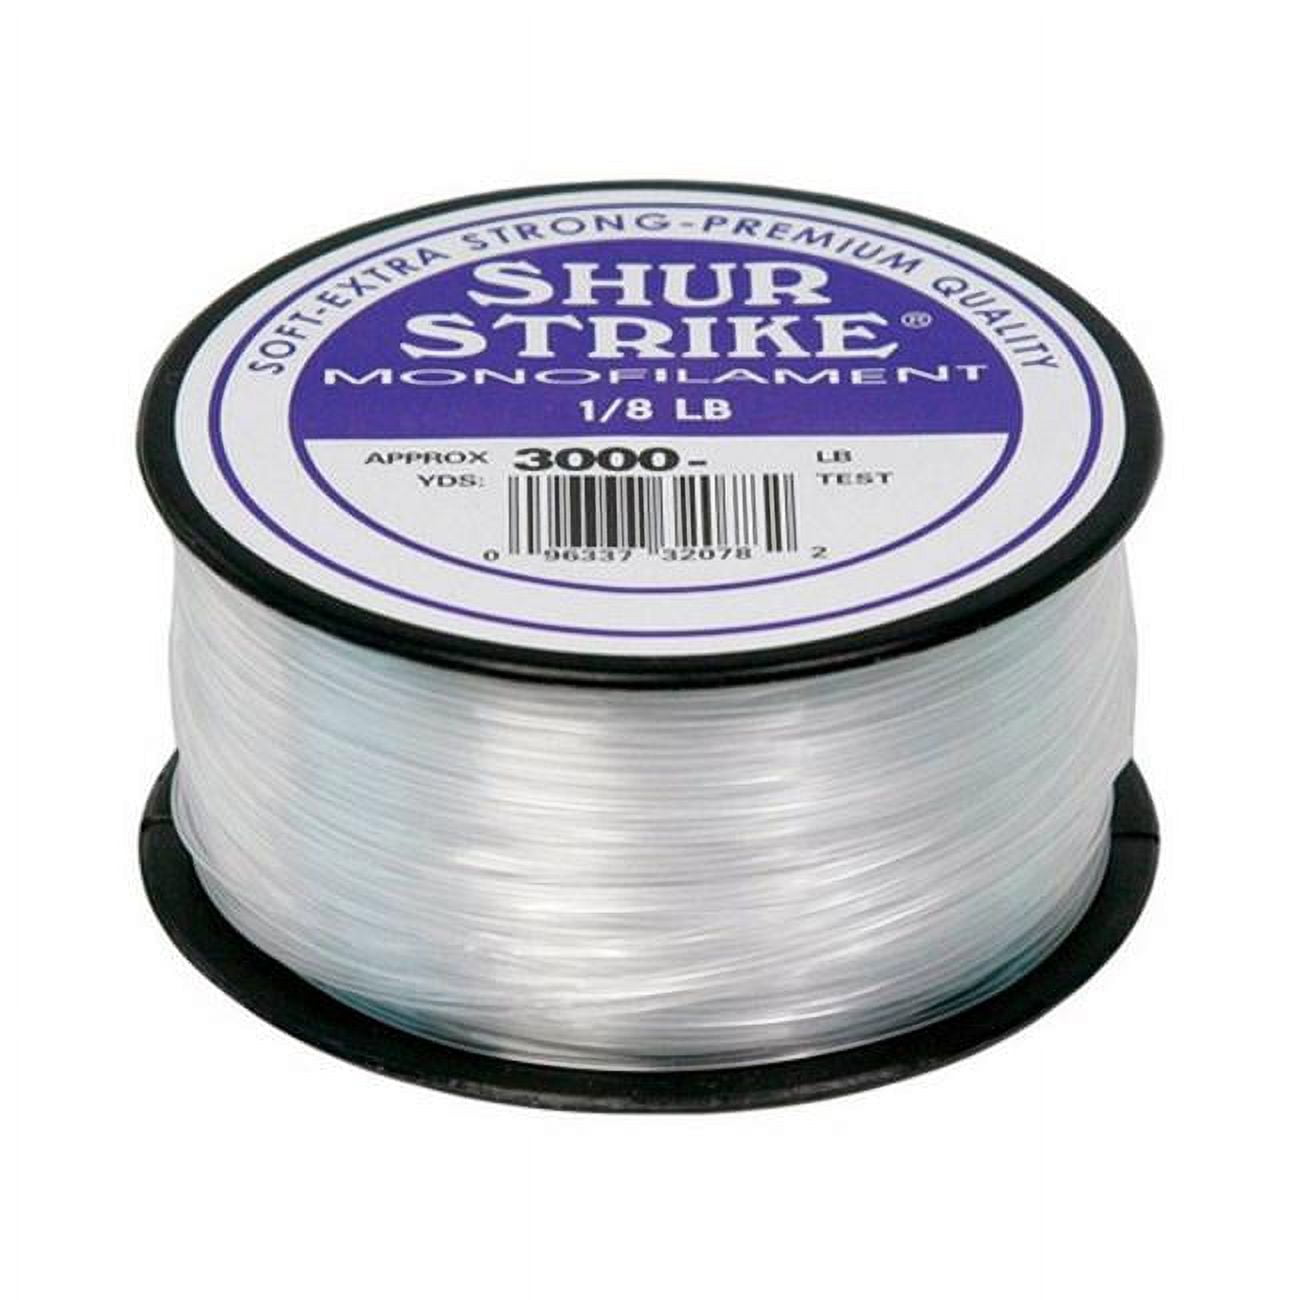 Shur Strike 3000-8 Bulk Monofilament Fishing Line 1/8Lb Spool 8 lb